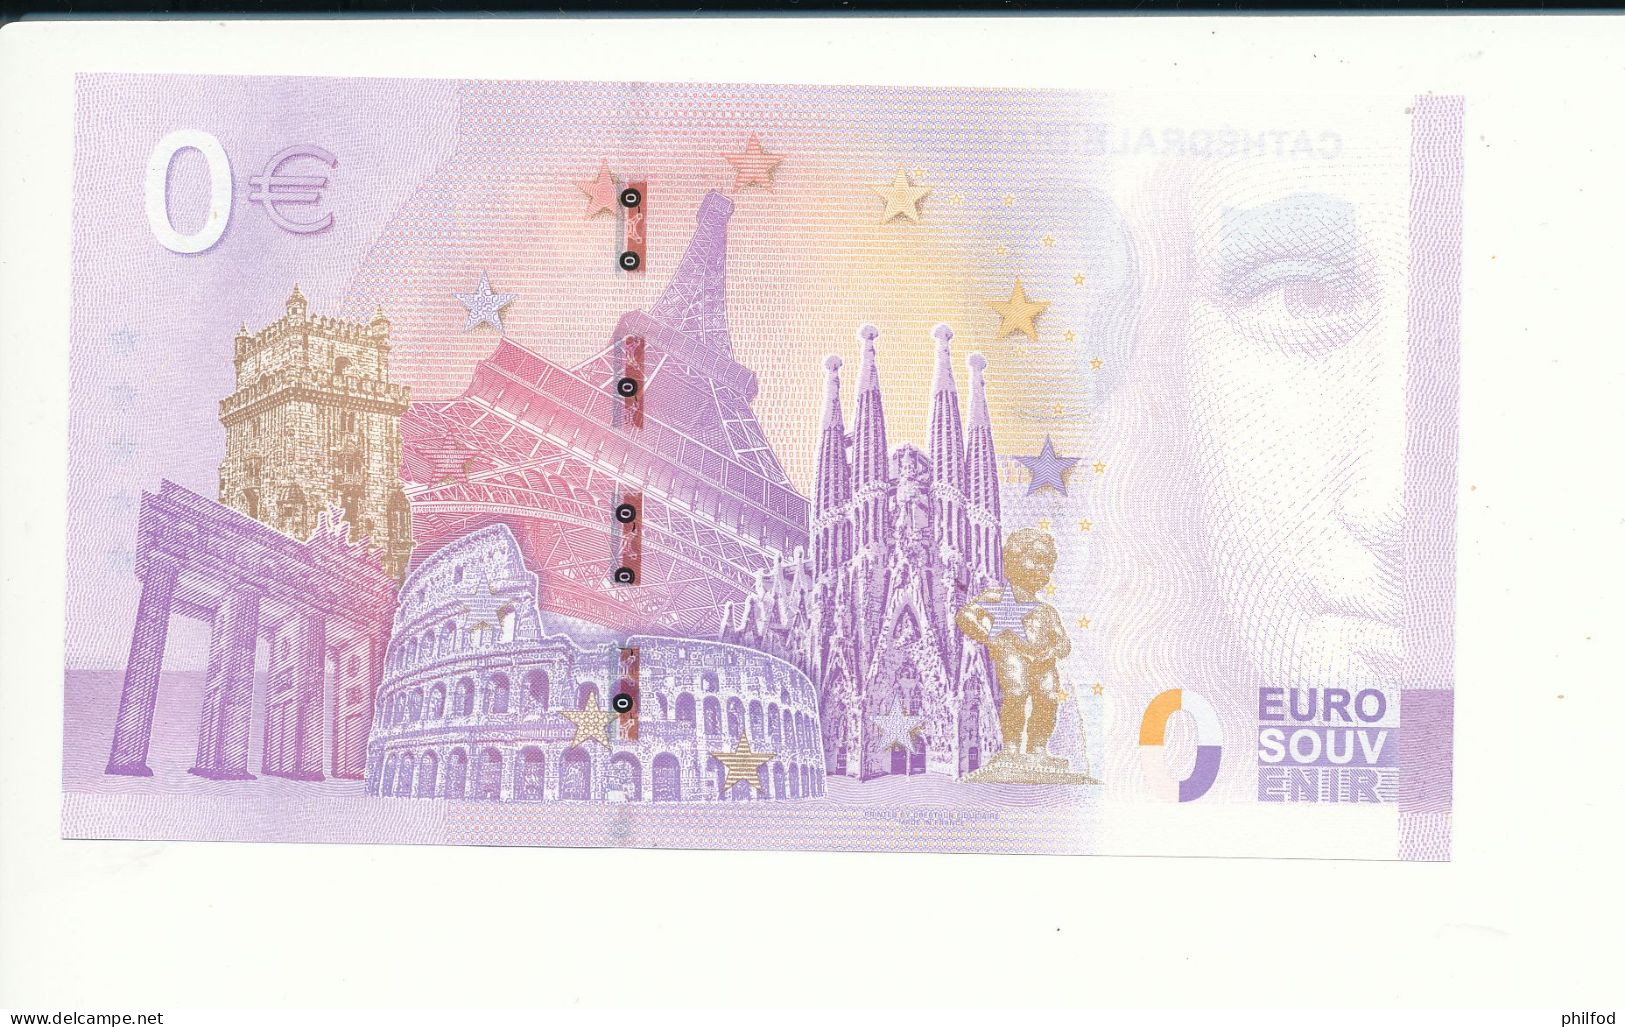 Billet Souvenir - 0 Euro - CATHEDRALE D'AMIENS - UEHX - 2023-1 - N° 5260 - Kilowaar - Bankbiljetten